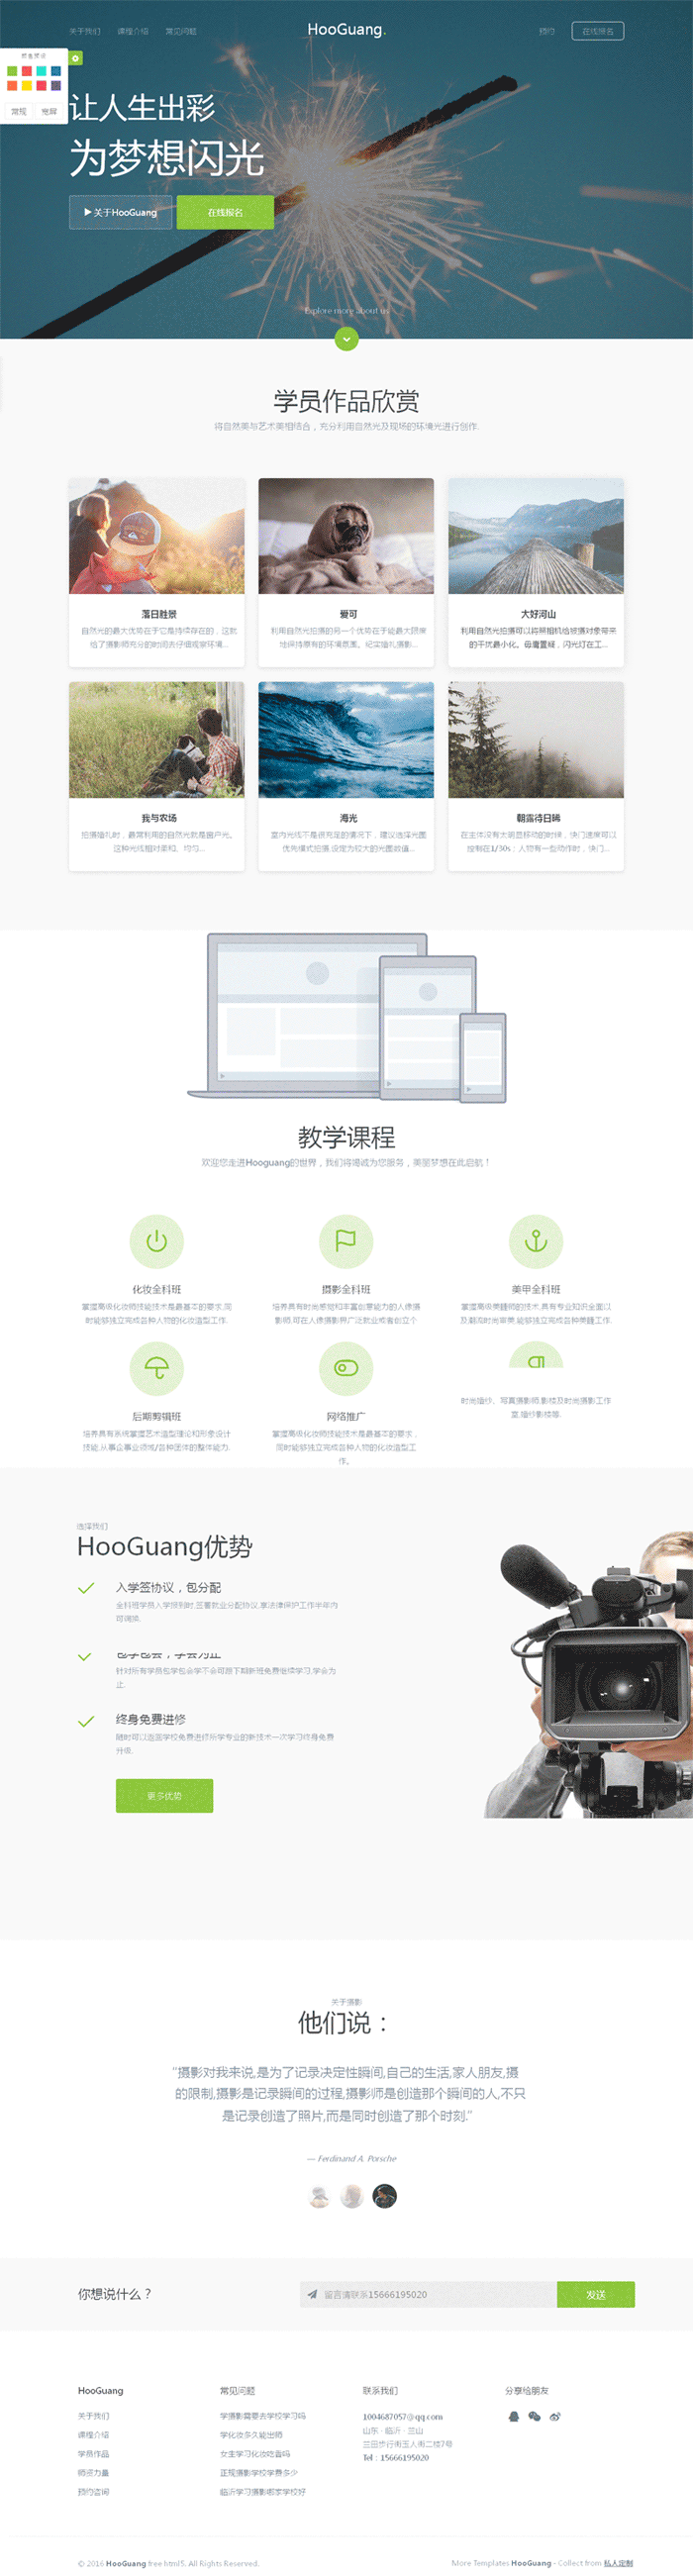 简洁宽屏的摄影培训公司网站html5模板下载